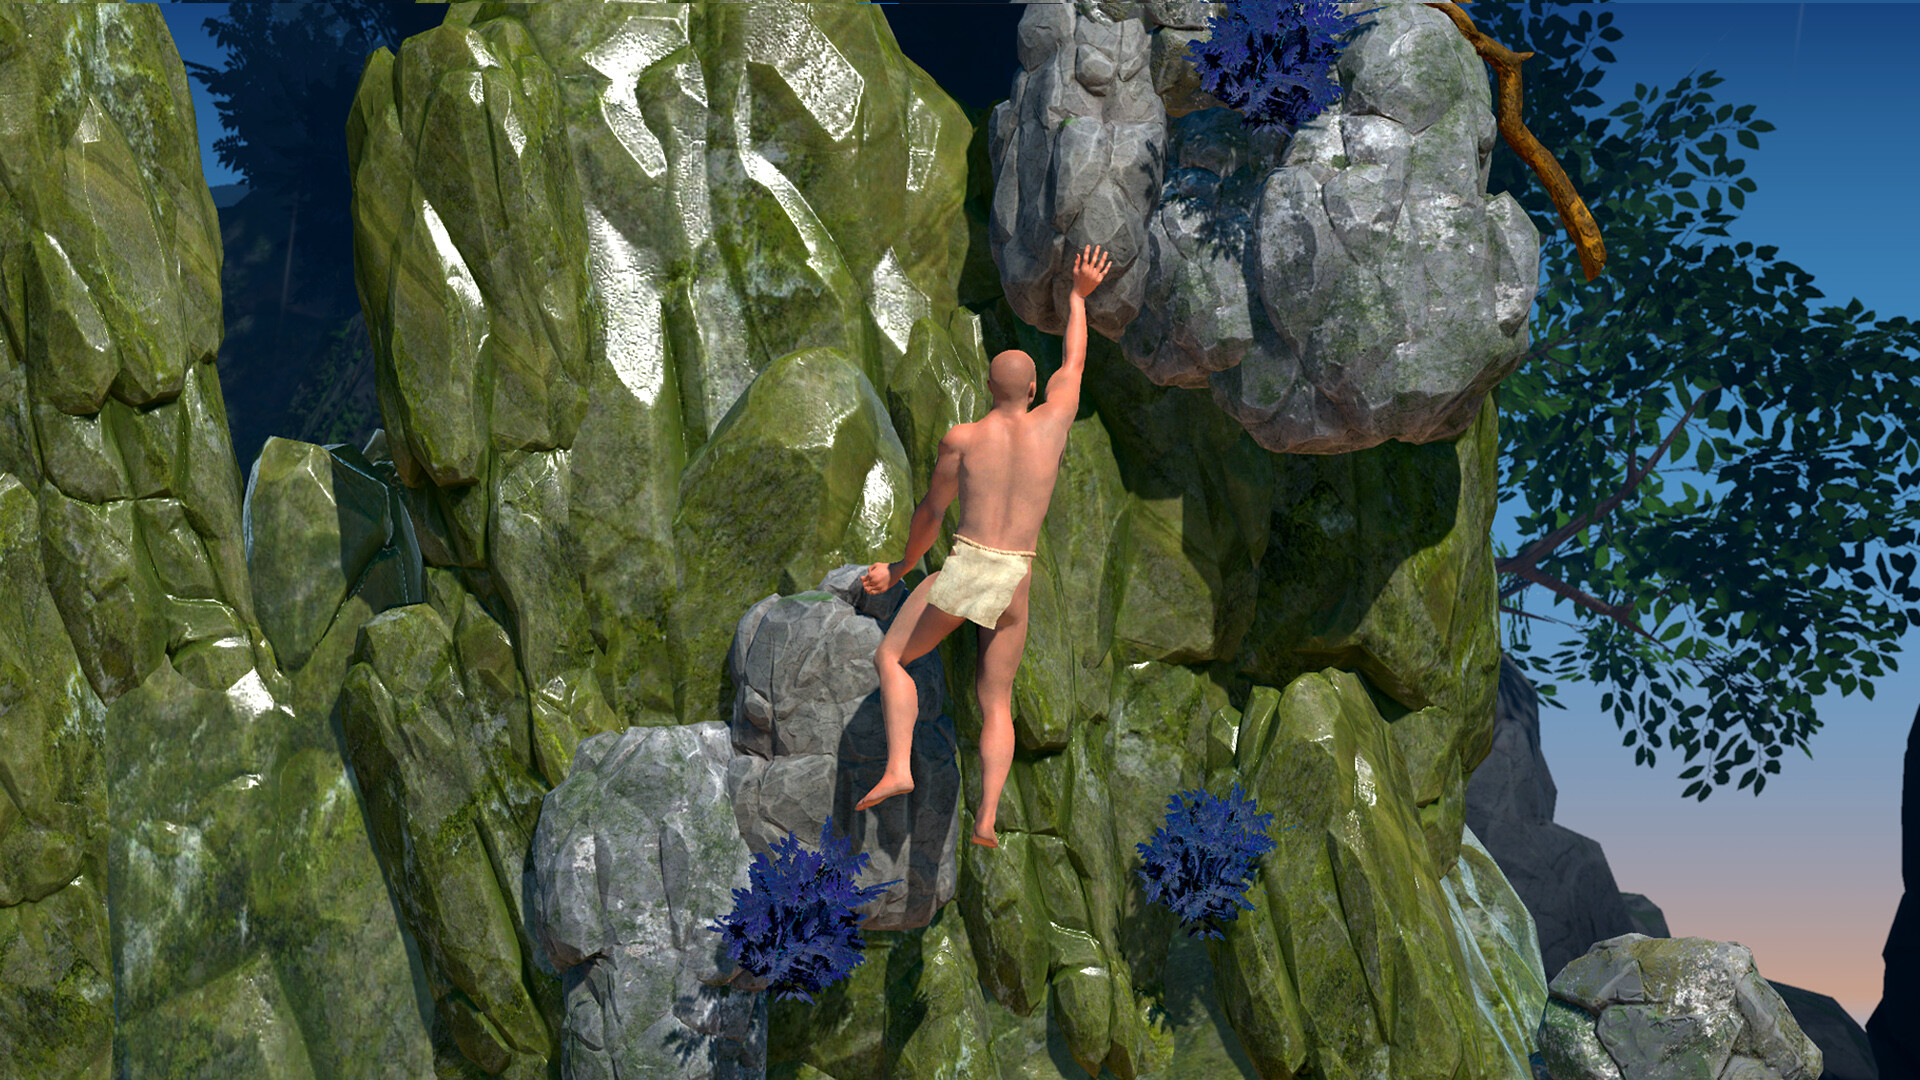 掘地求生风格游戏《一款关于攀岩的困难游戏》预告片发布